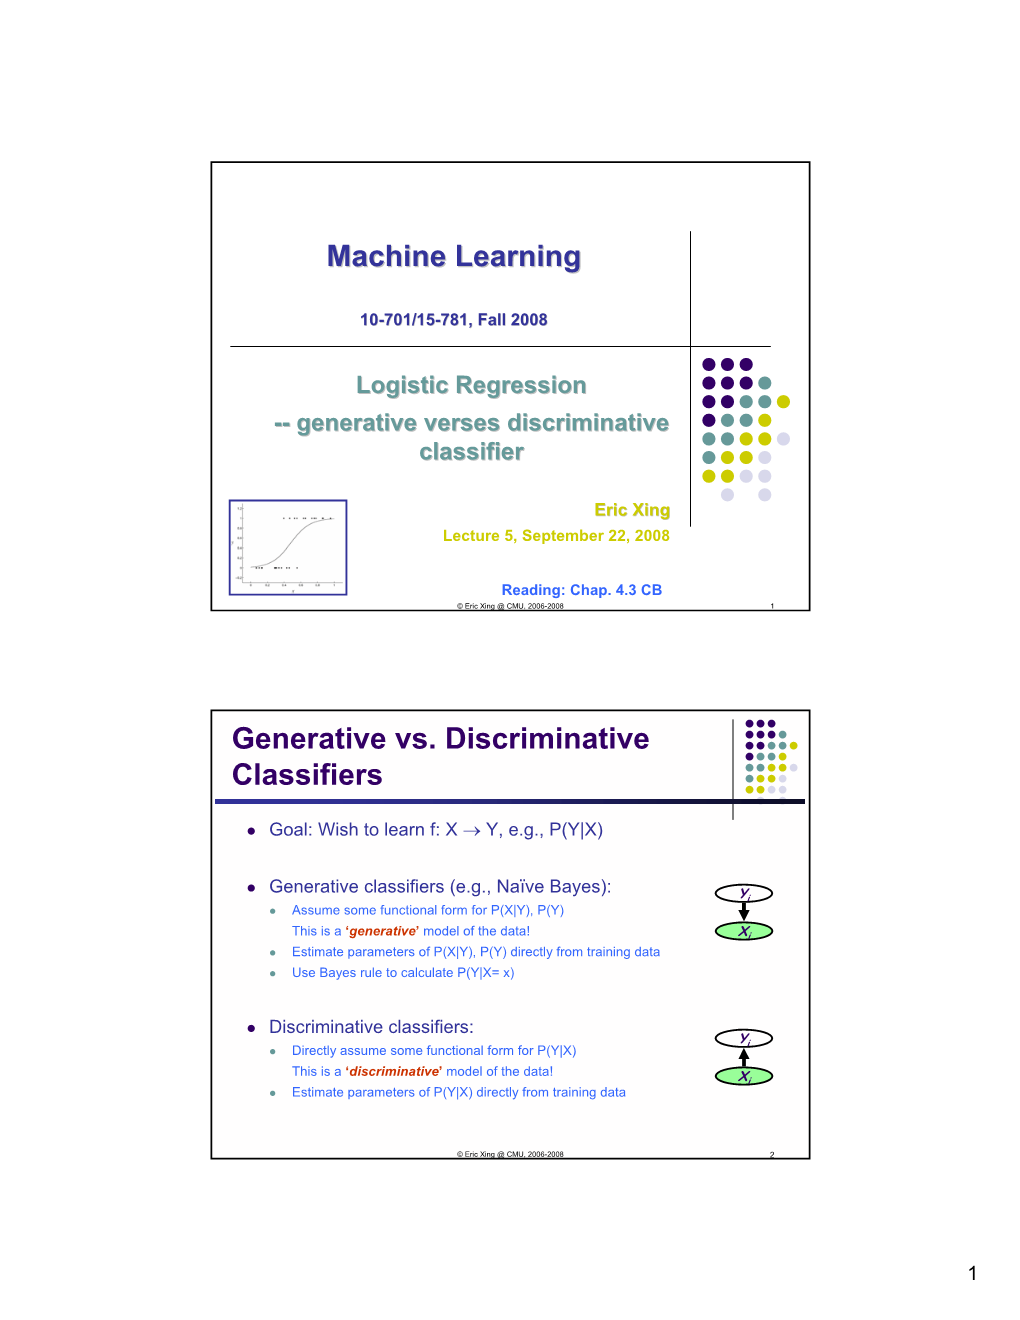 Machine Learning Generative Vs. Discriminative Classifiers